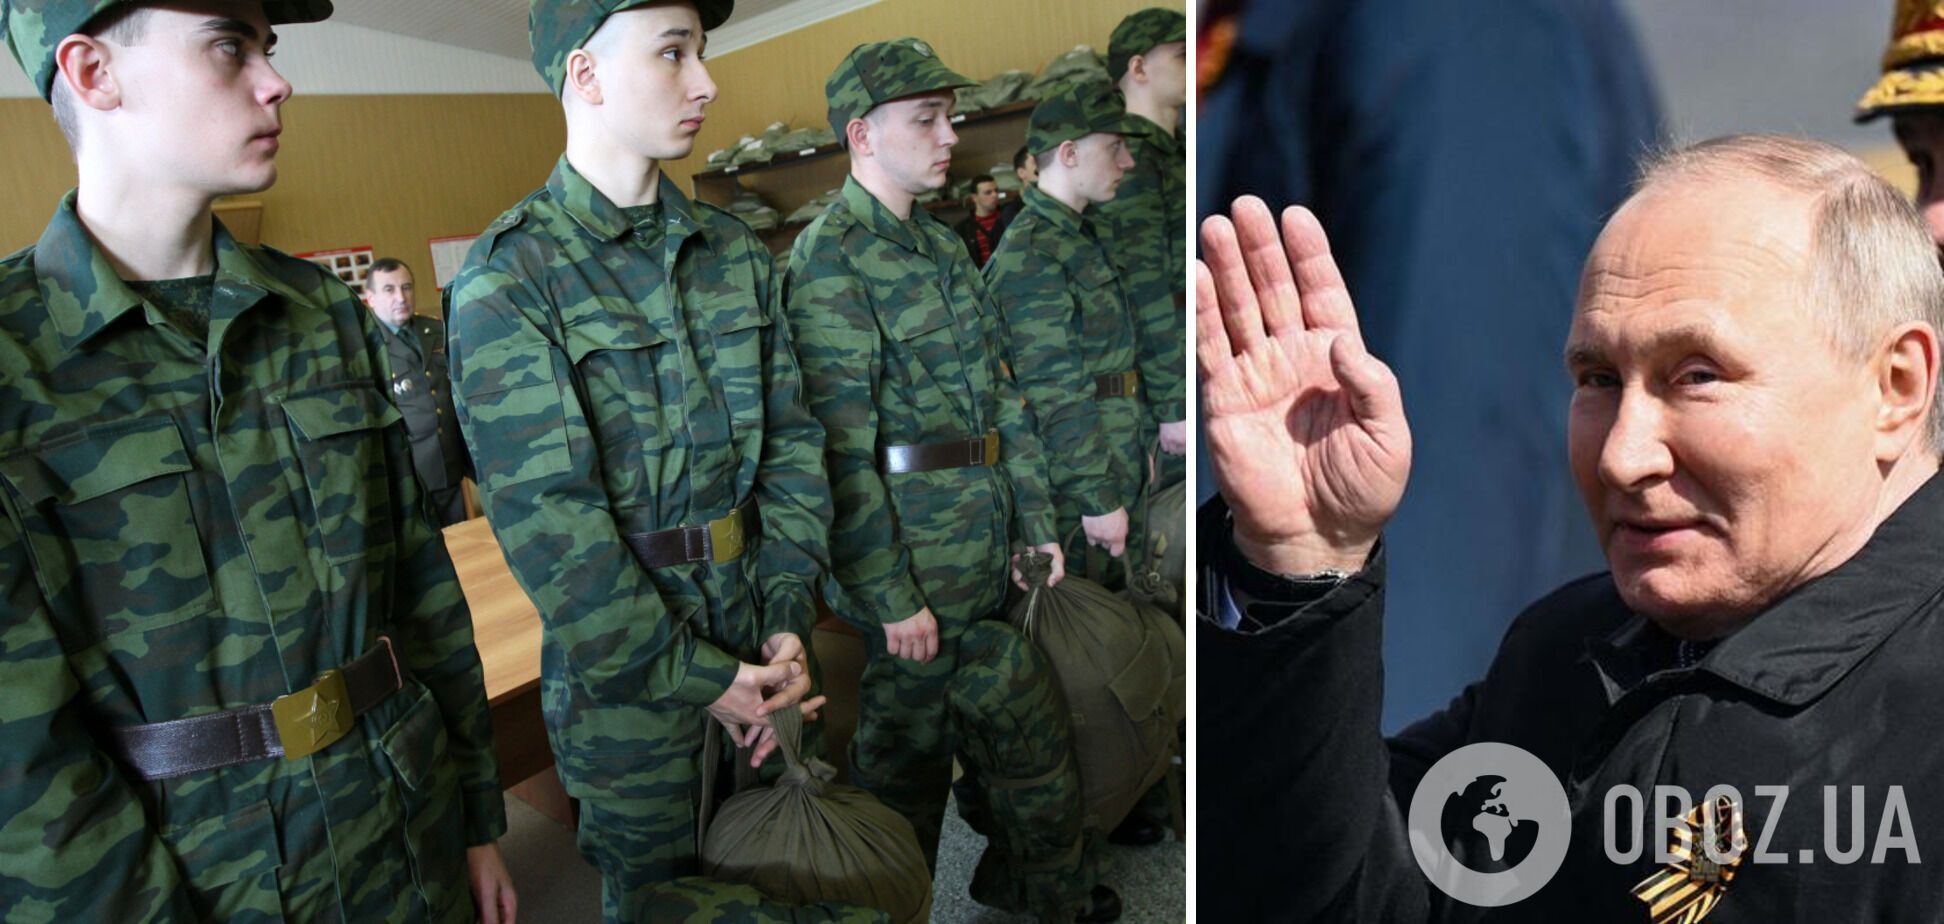 Кремль приказал регионам России формировать 'добровольческие батальоны' для участия в войне в Украине